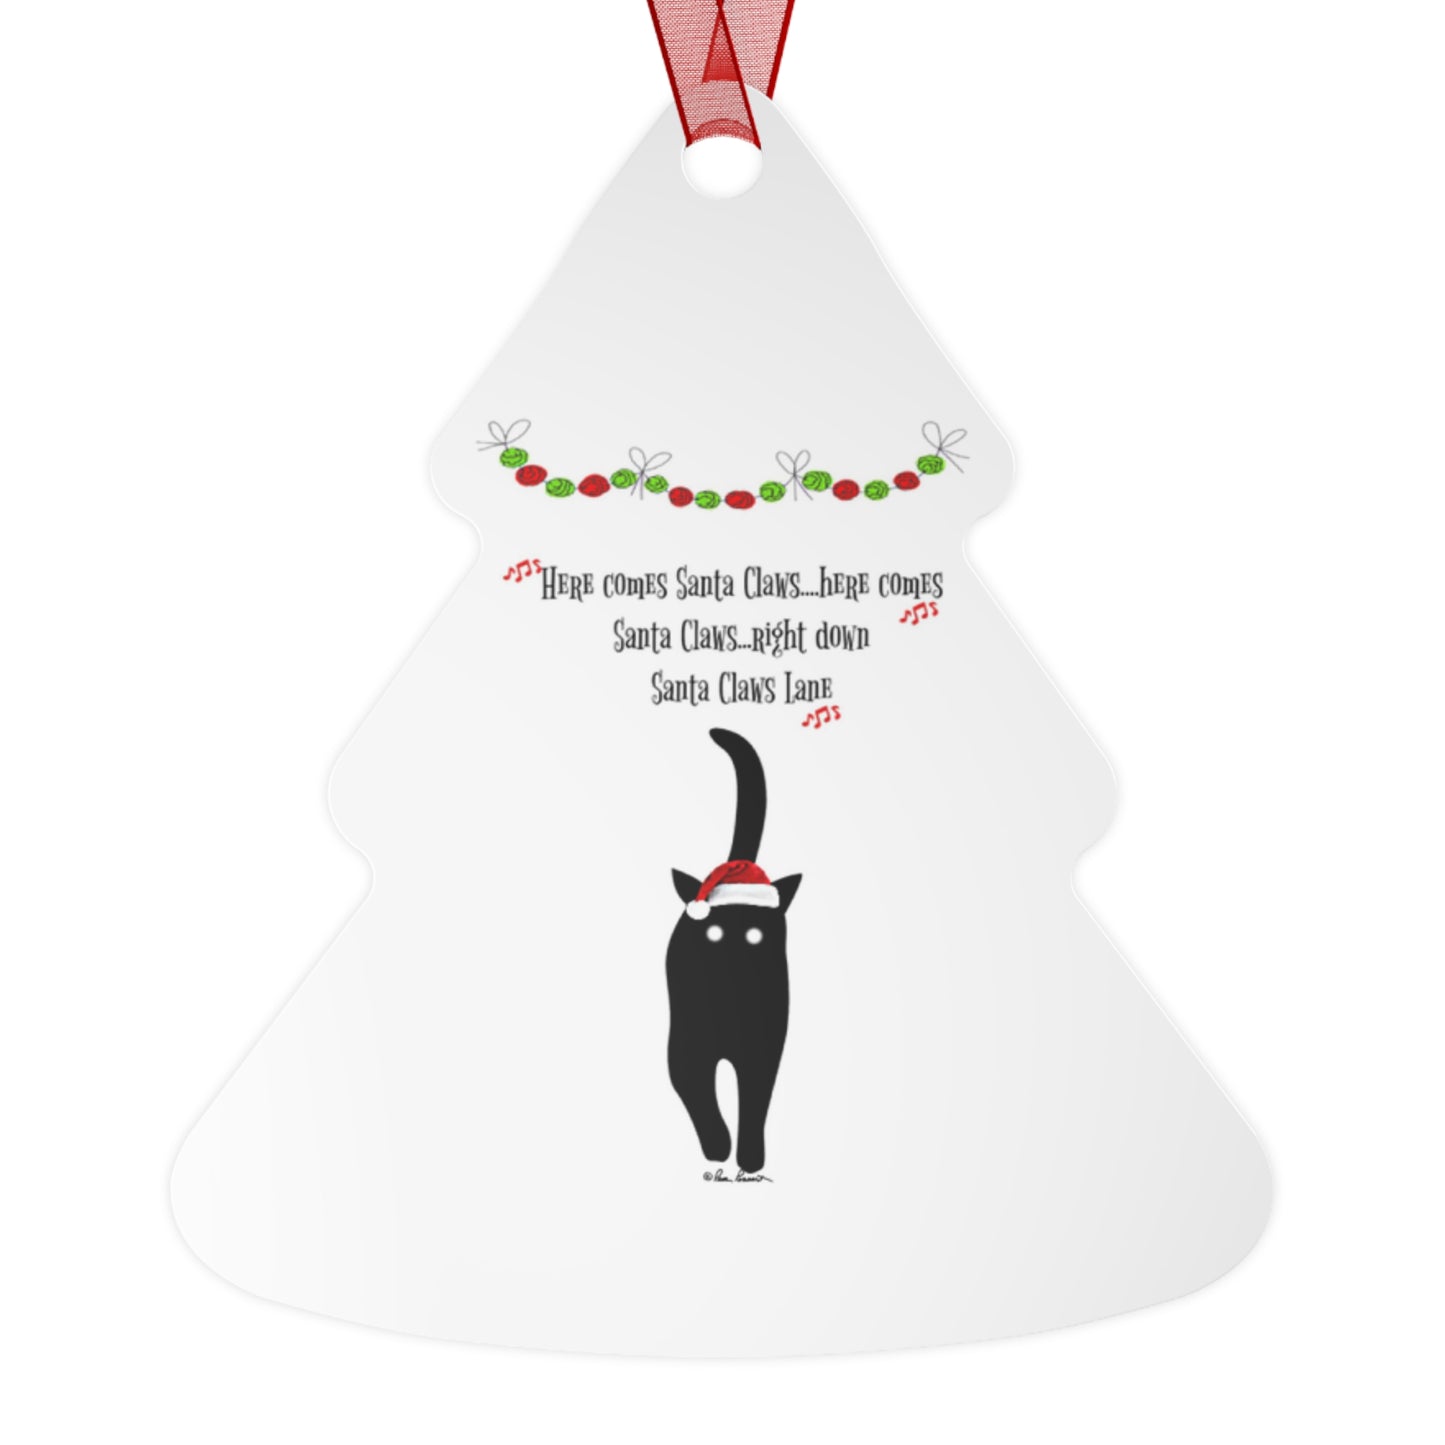 Santa-Claus Holiday Ornament: 4 shapes; Metal; Red ribbon